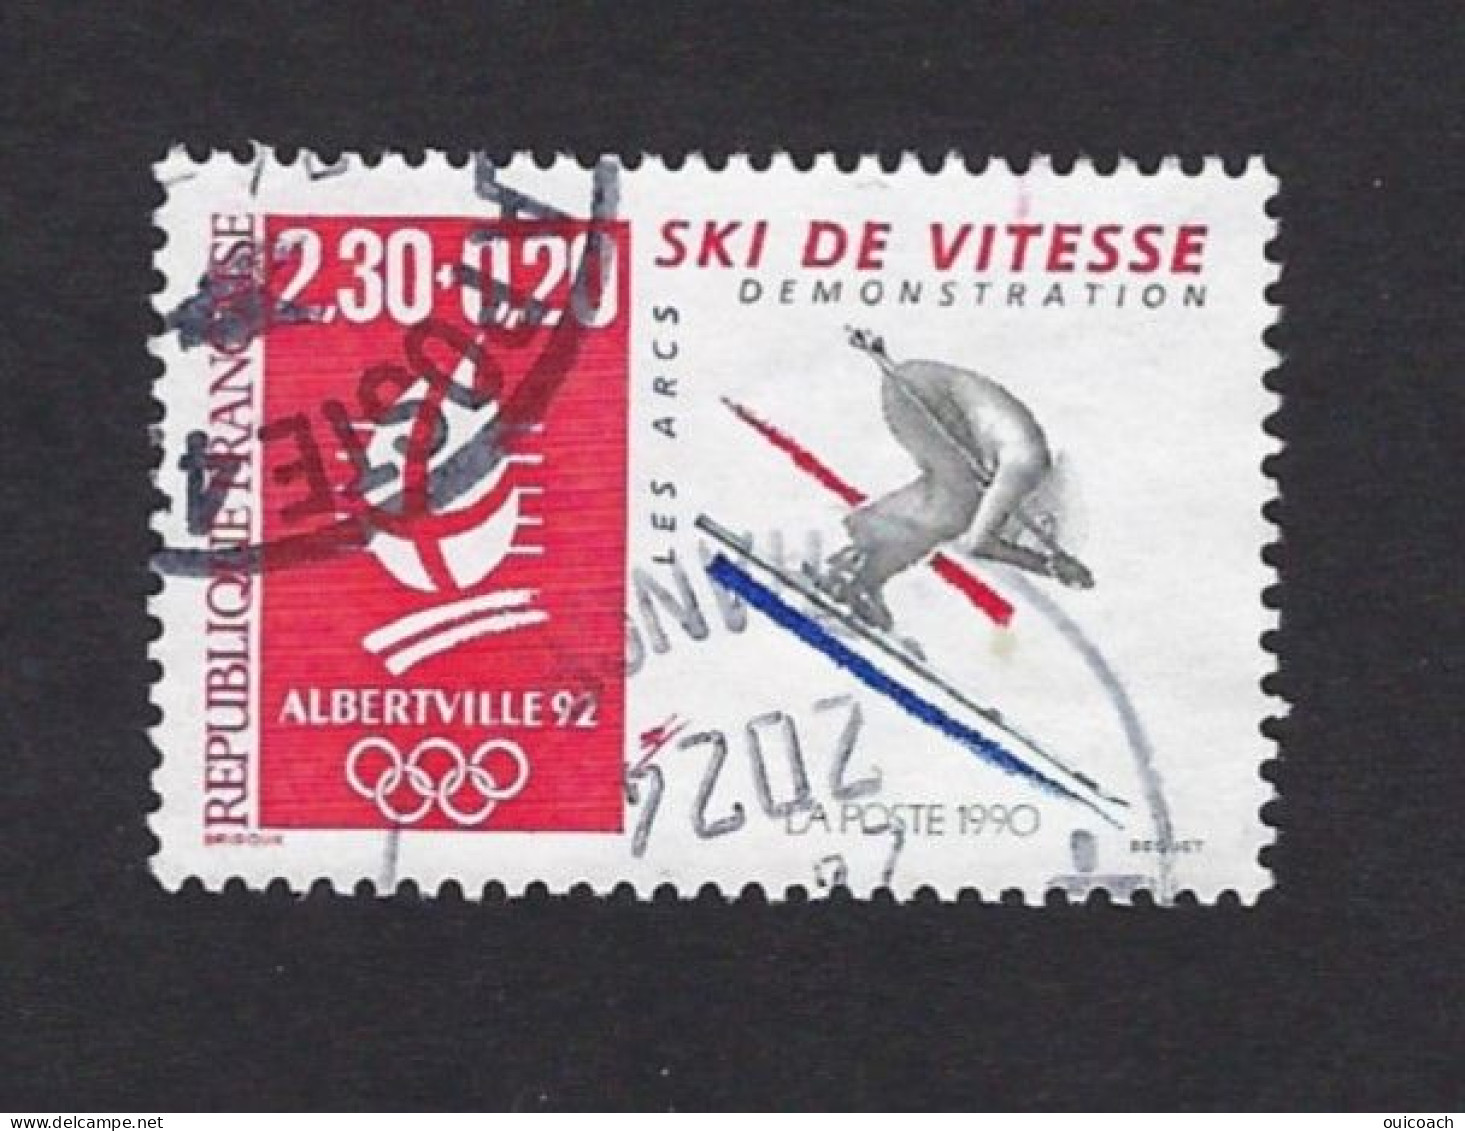 Ski Vitesse, Descente, 2675 - Winter 1992: Albertville